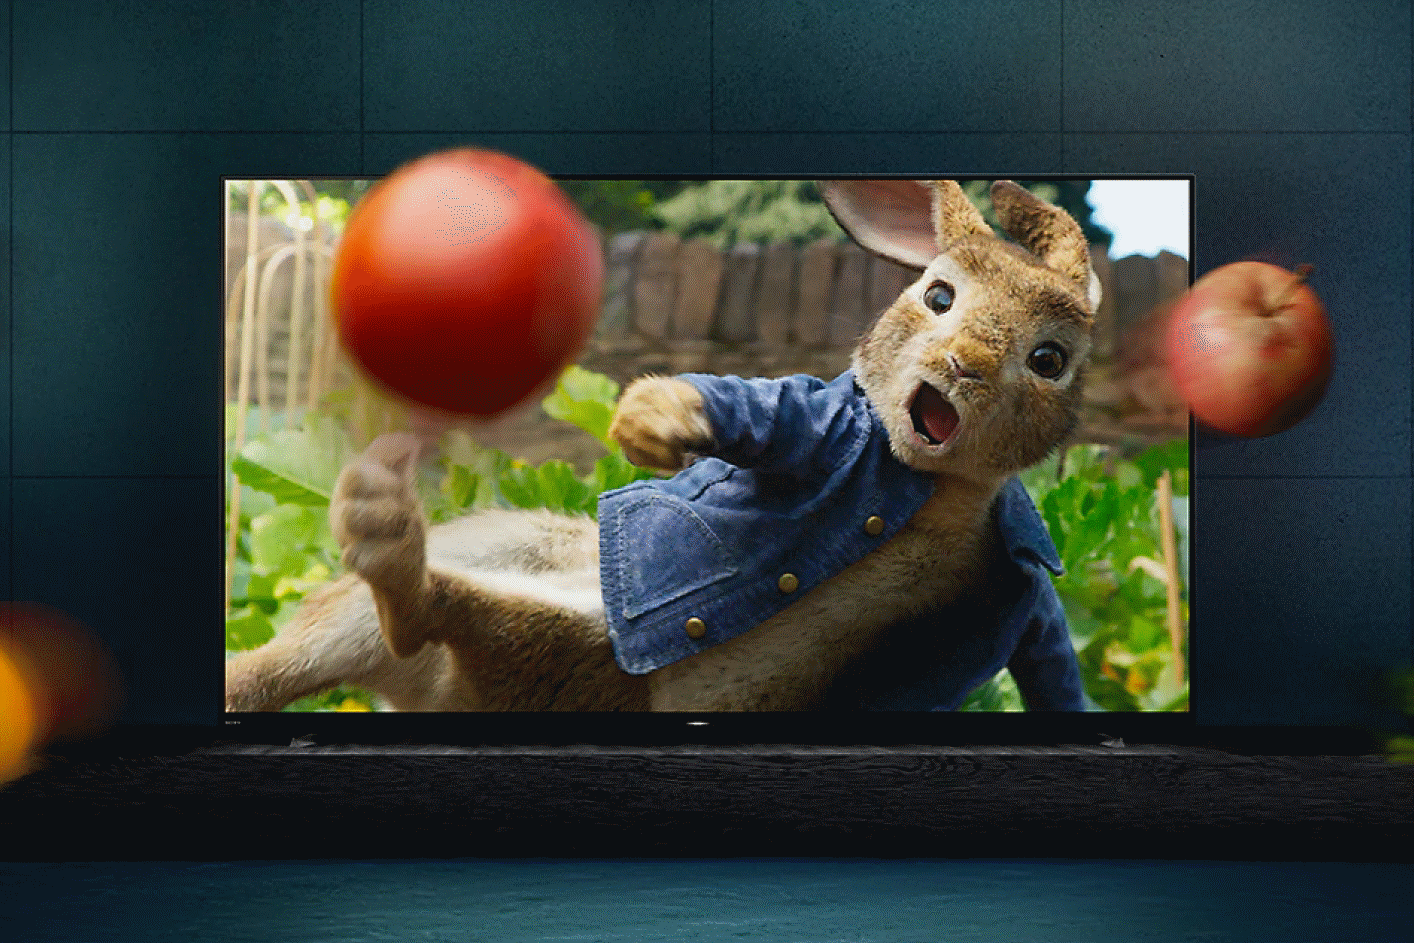 置於底座上的 BRAVIA 顯示器，螢幕播放著《彼得兔》電影，水果和蔬菜飛出顯示器螢幕。